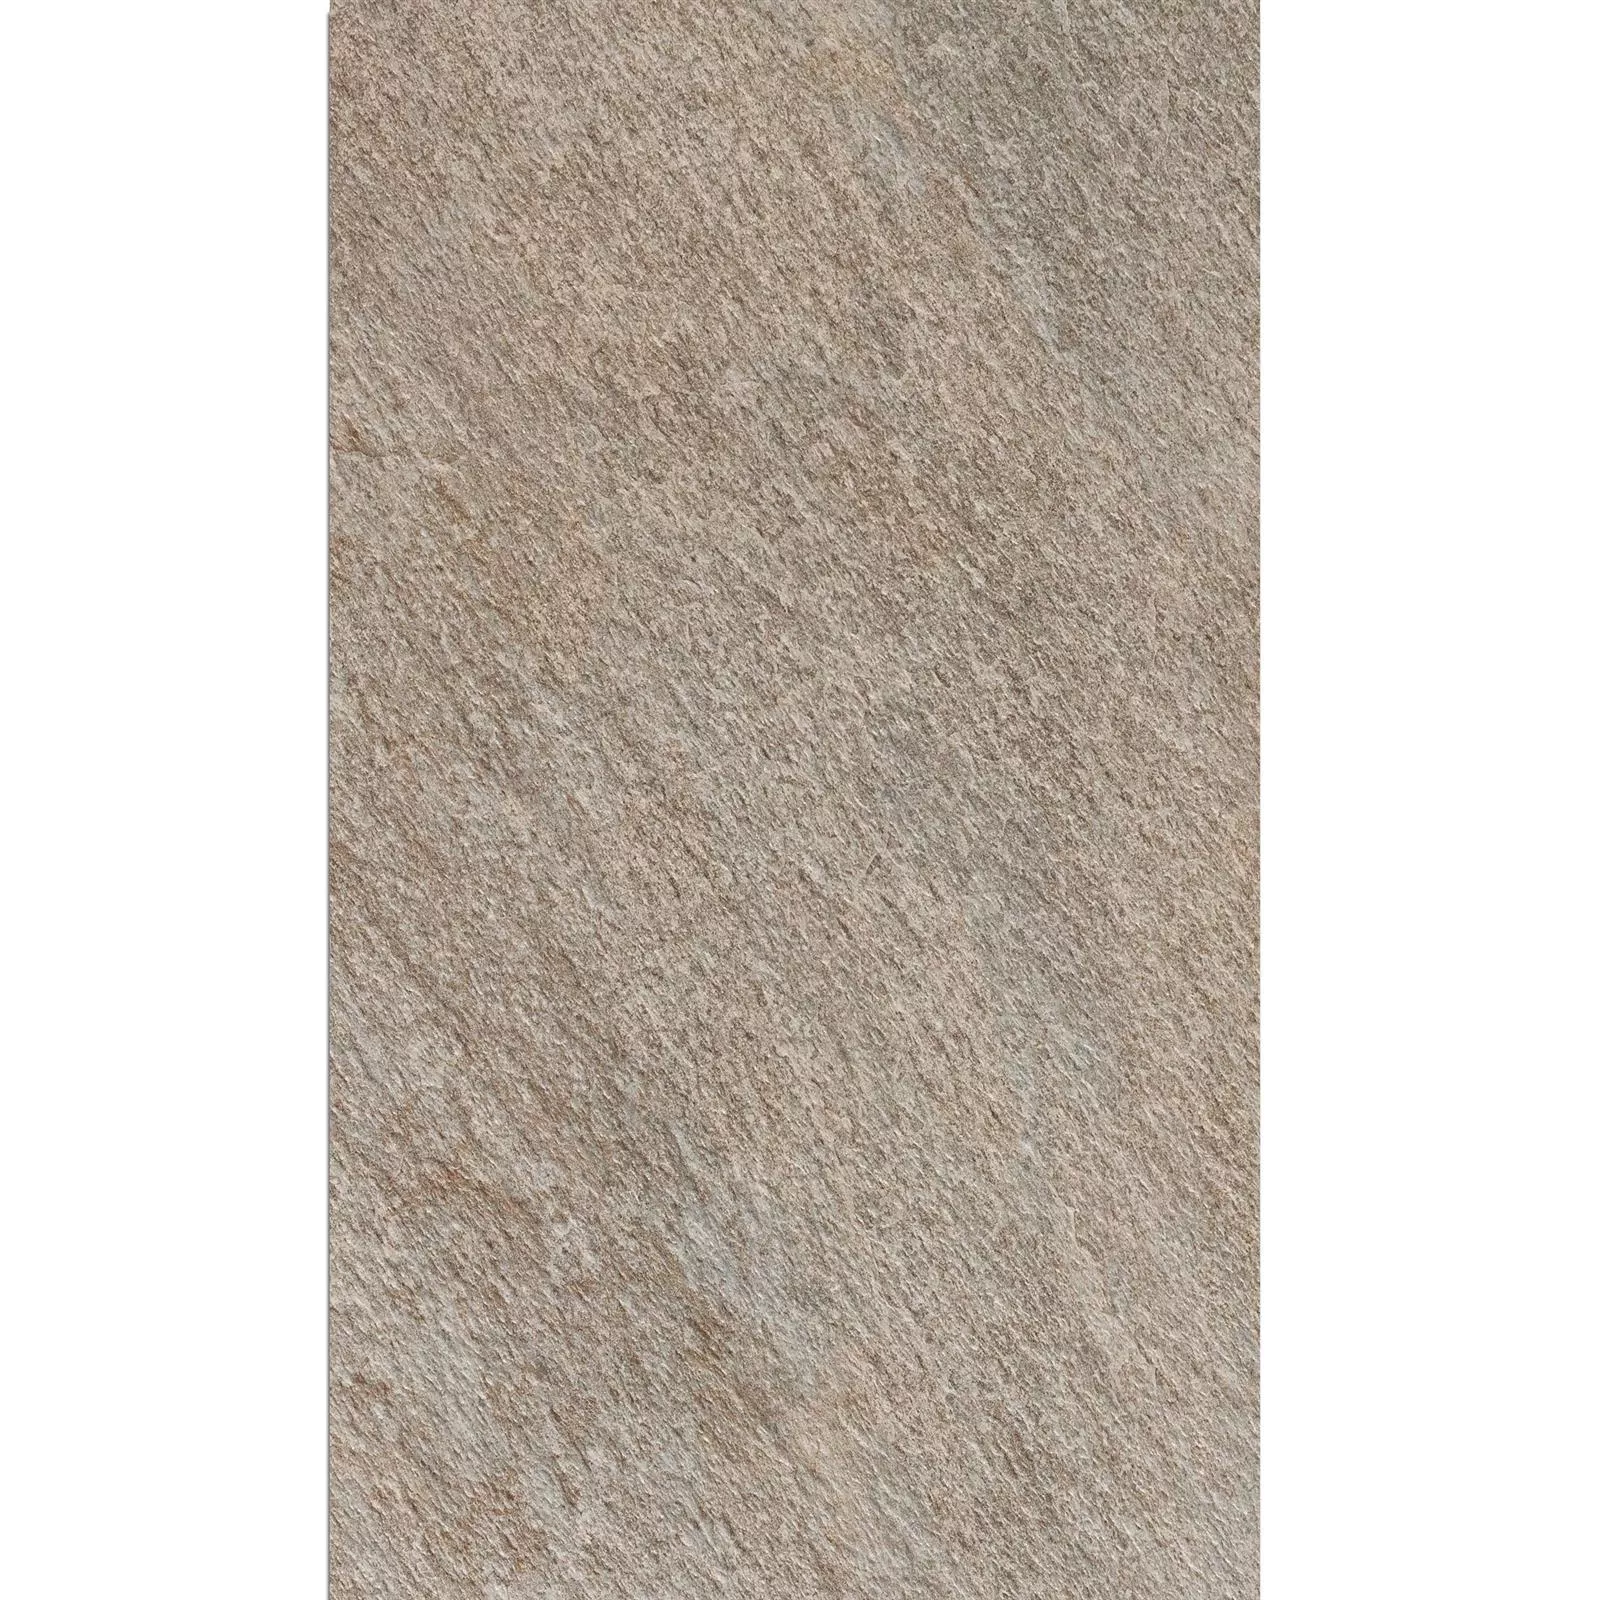 Sample Terrastegels Stoneway Natuursteen Optiek Grijs 60x90cm